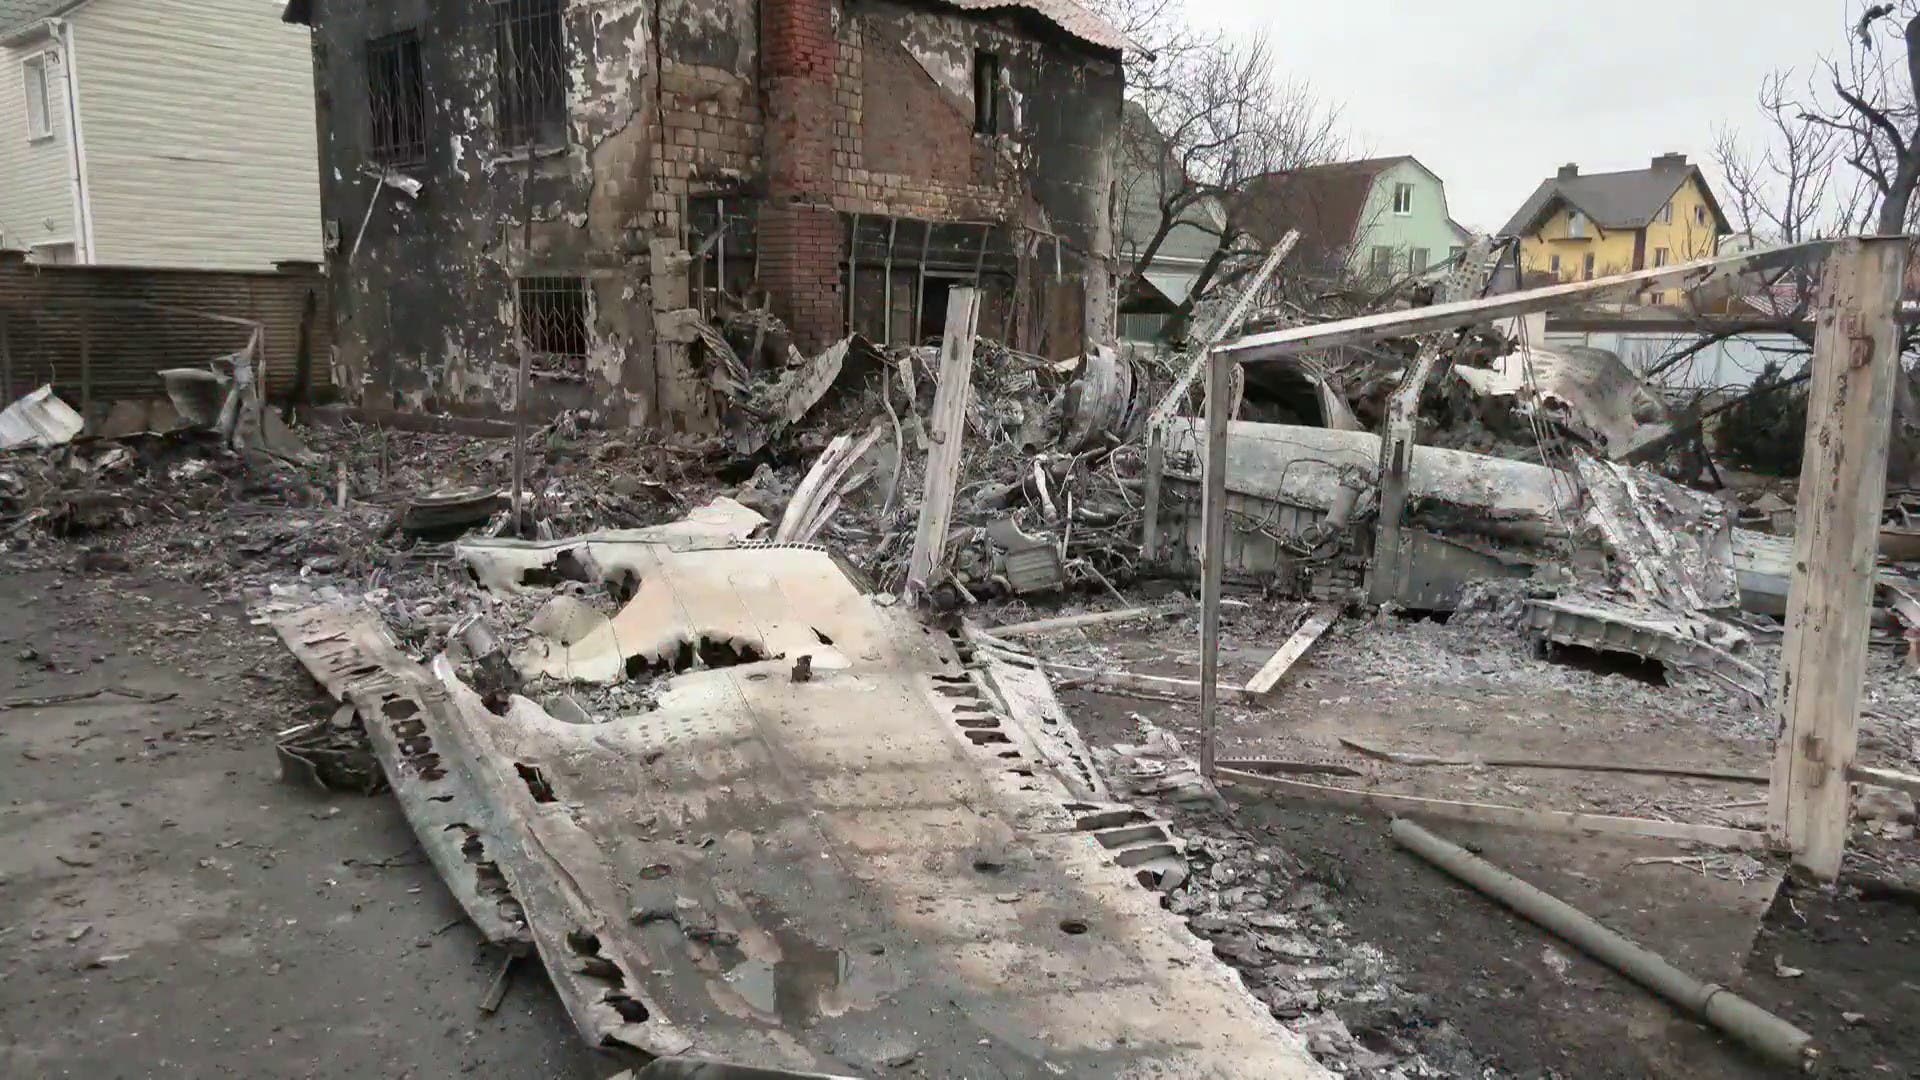  صور جديدة تظهر الدمار الناتج عن القصف الروسي على أوكرانيا 